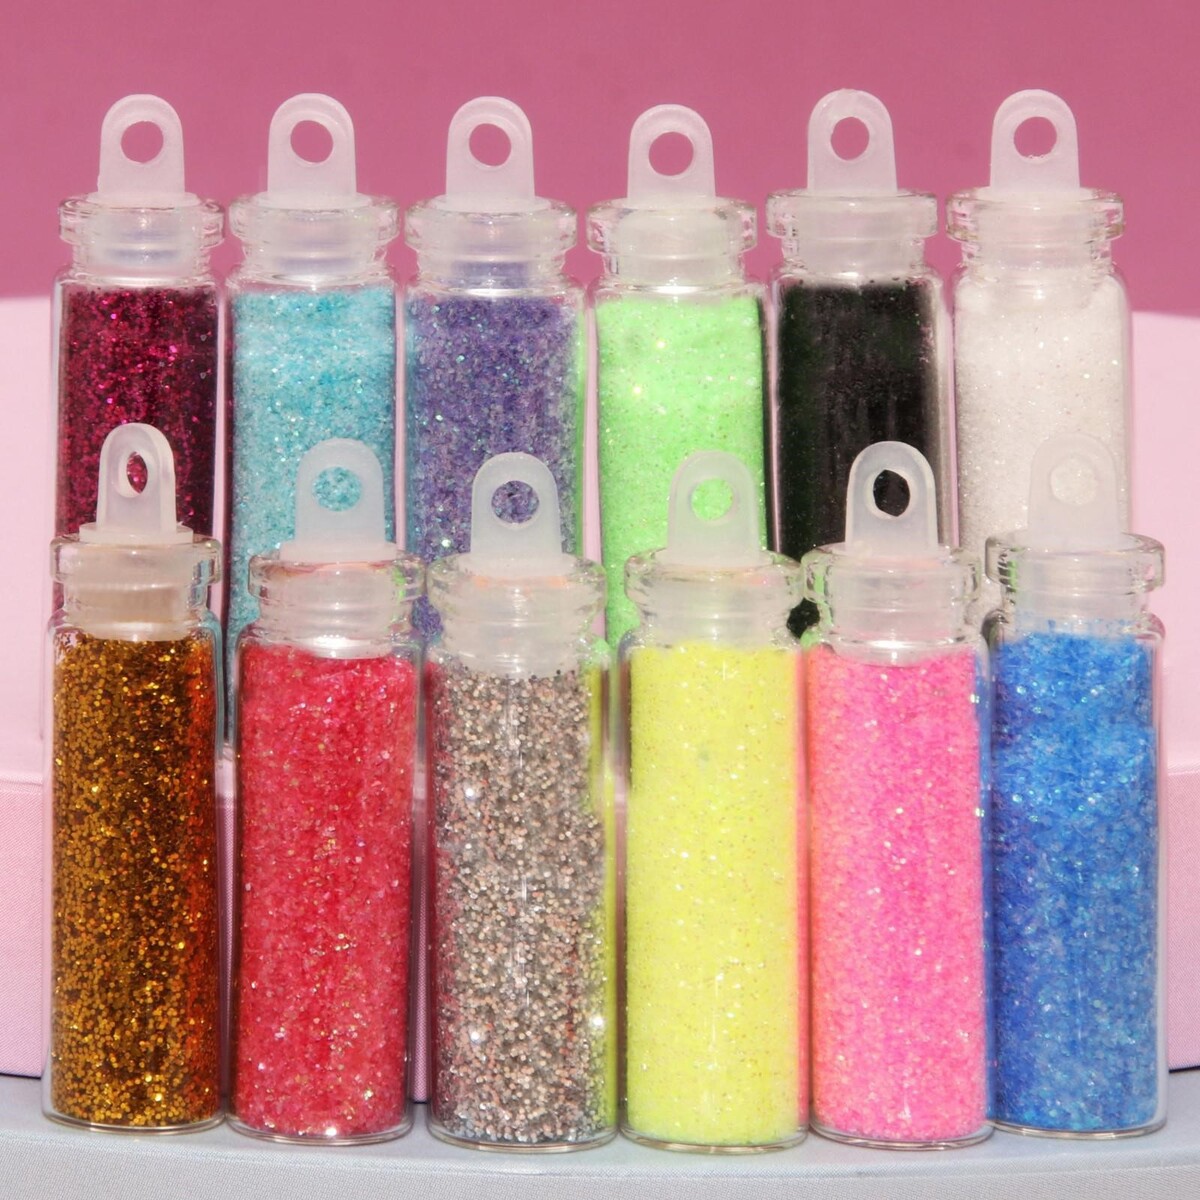 Блестки для декора, мелкие, набор 12 бутылочек, разноцветные набор глиттера в стеклянных бутылках с пробками